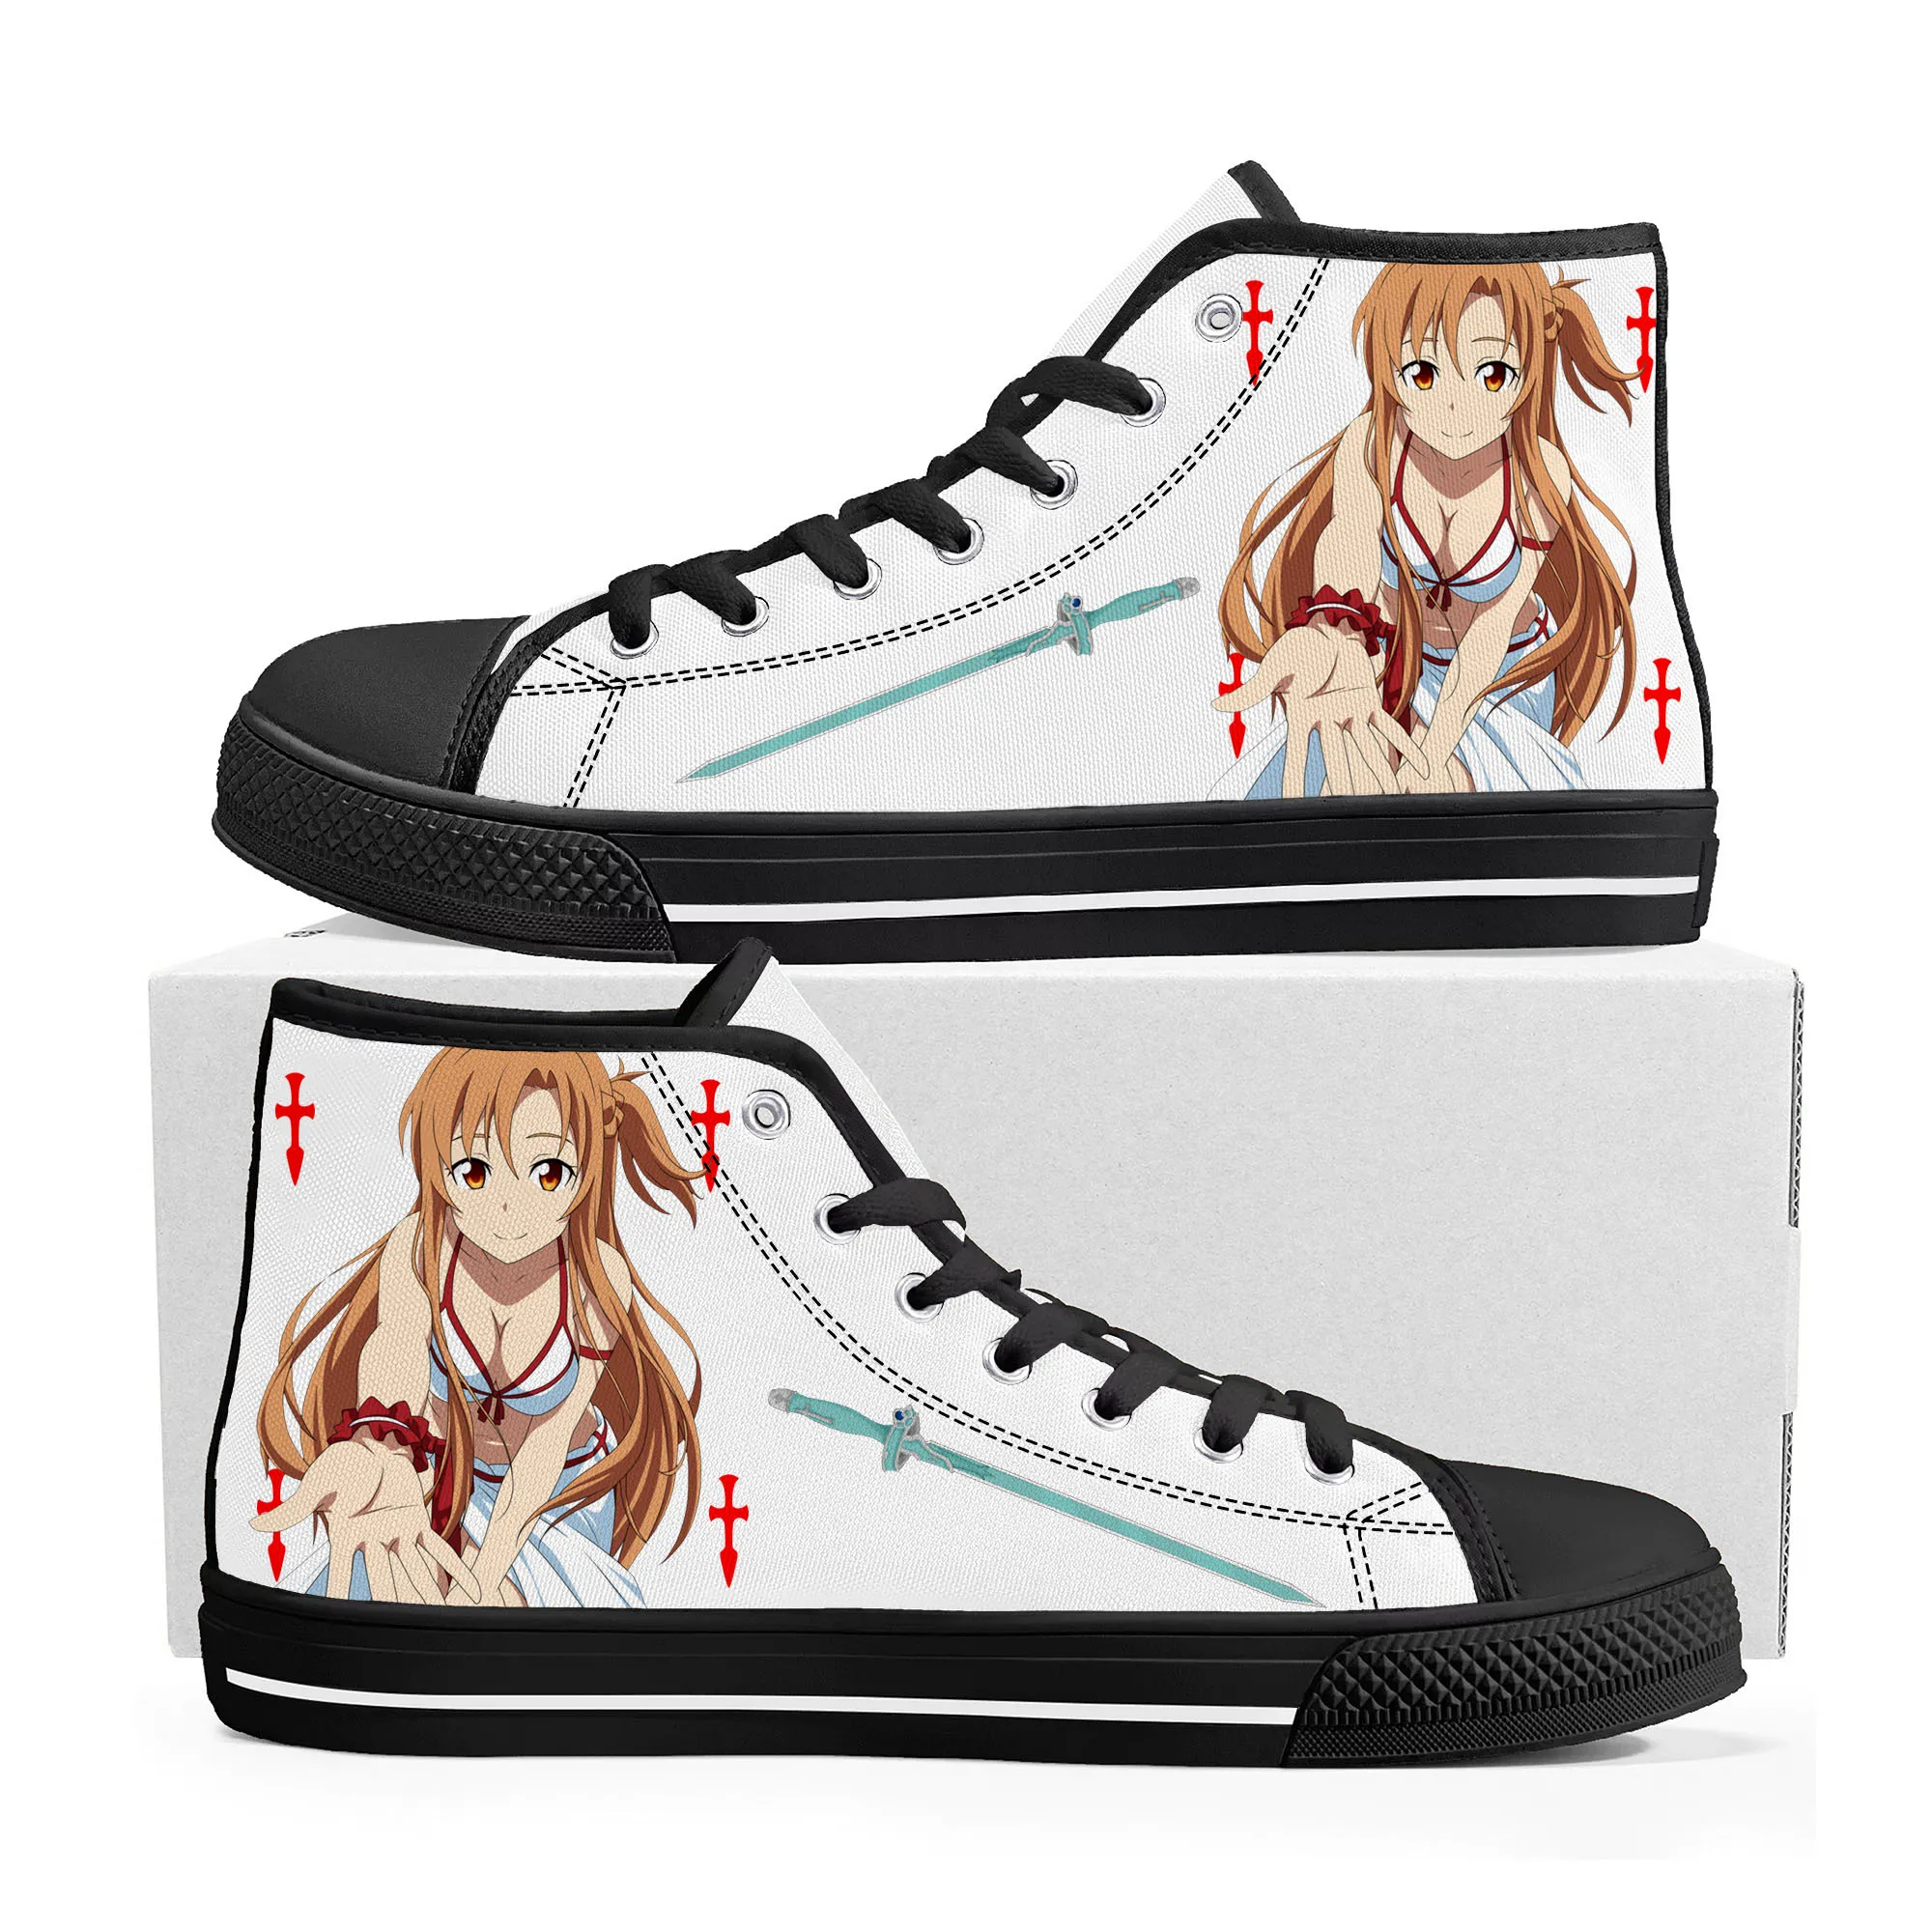 

Меч искусство онлайн манга Asuna высокие кроссовки высокого качества женские подростковые холщовые кроссовки повседневная обувь для пары обувь на заказ